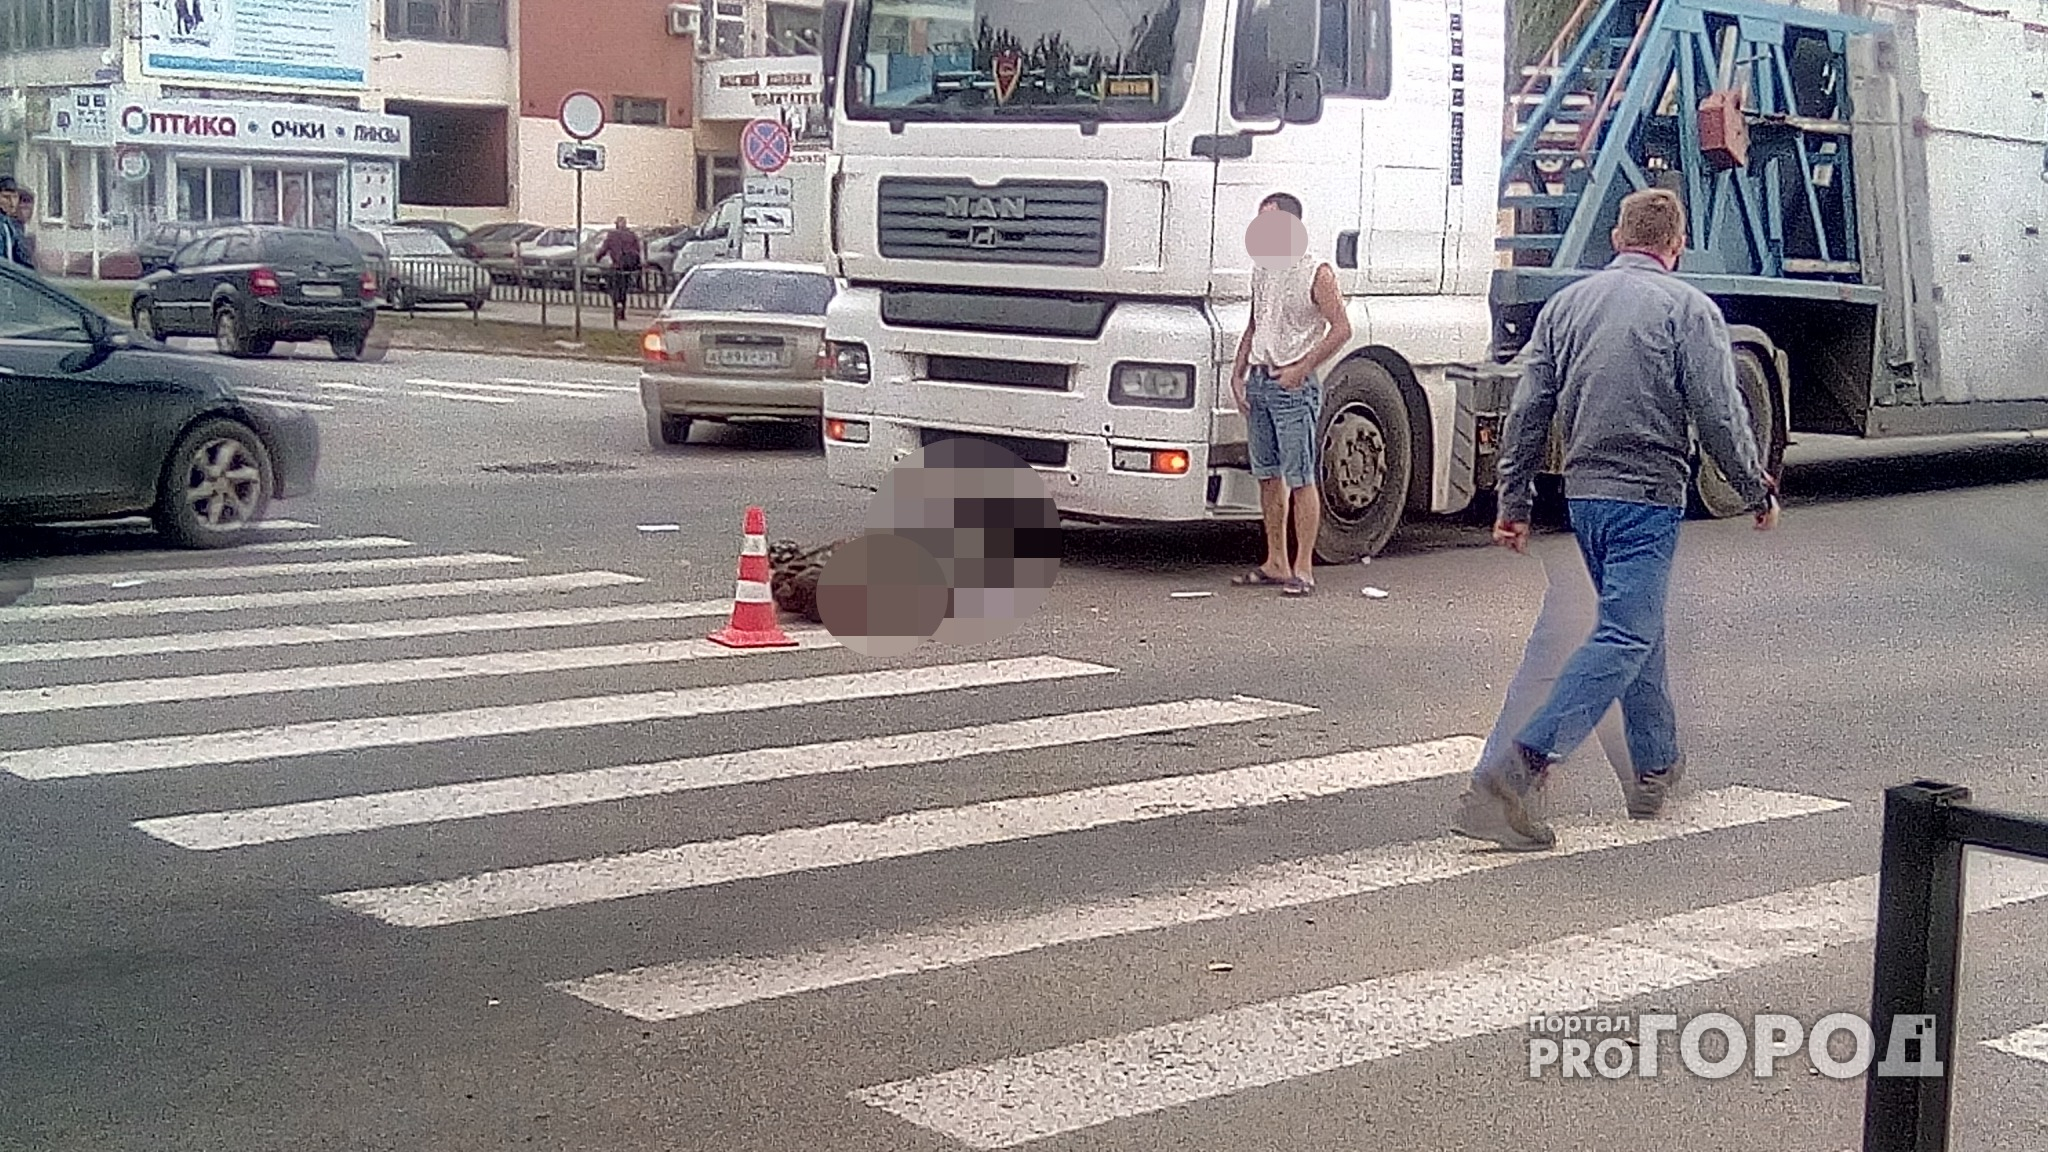 Появилось видео с места аварии, где фура сбила пешехода в Йошкар-Оле